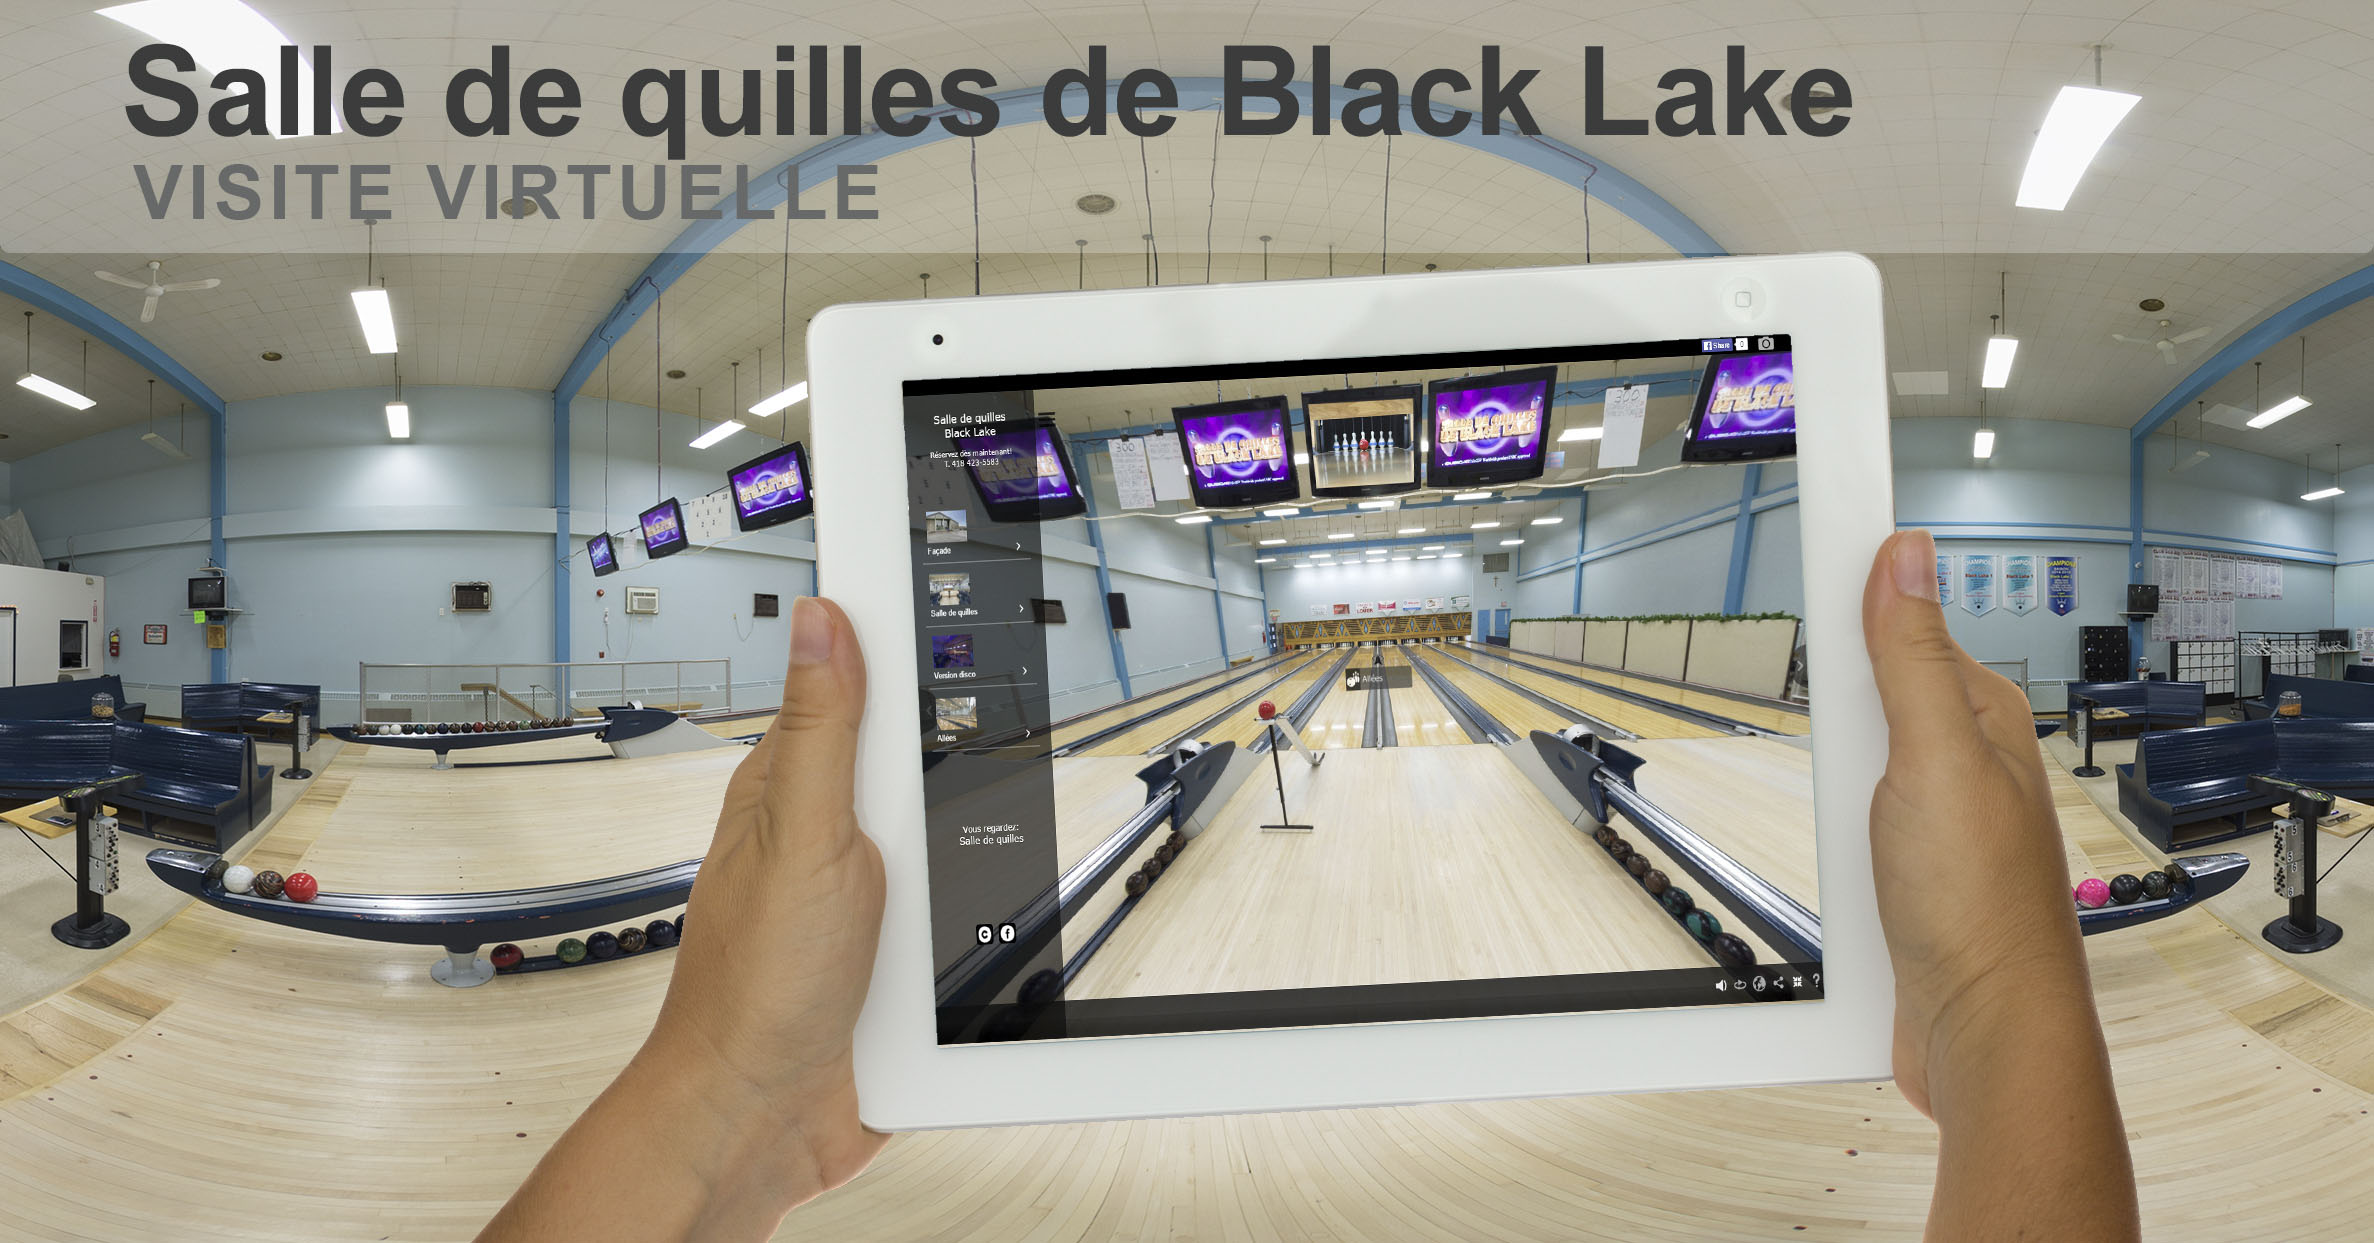 Visite virtuelle 360 degrés de la Salle de quilles de Black Lake